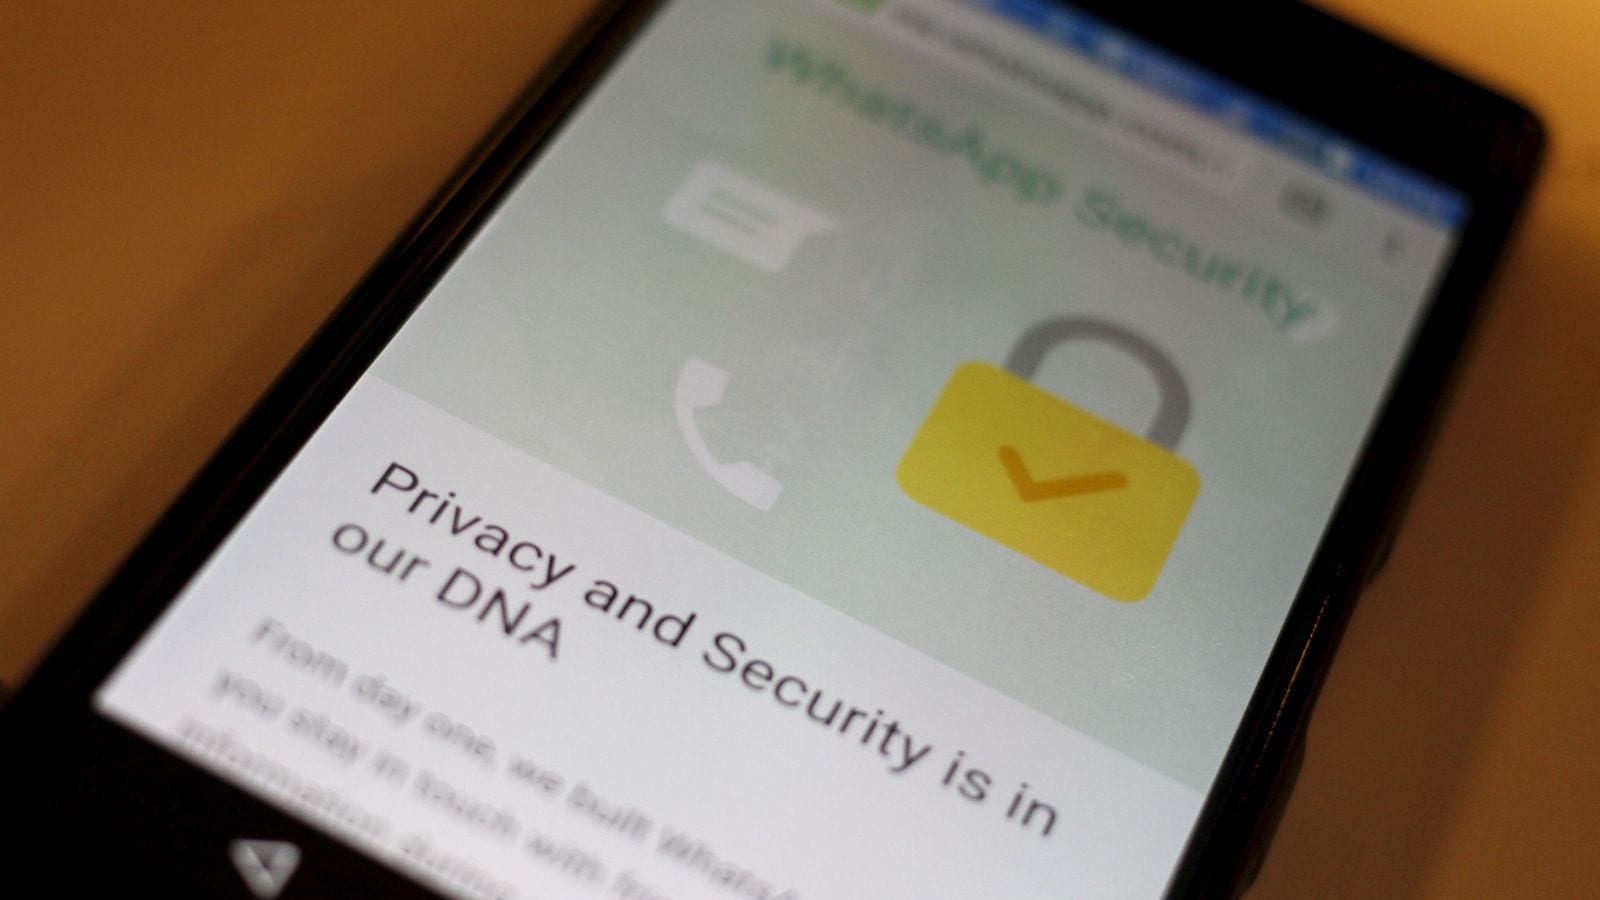 Imagem mostrando texto do WhatsApp sobre segurança e criptografia